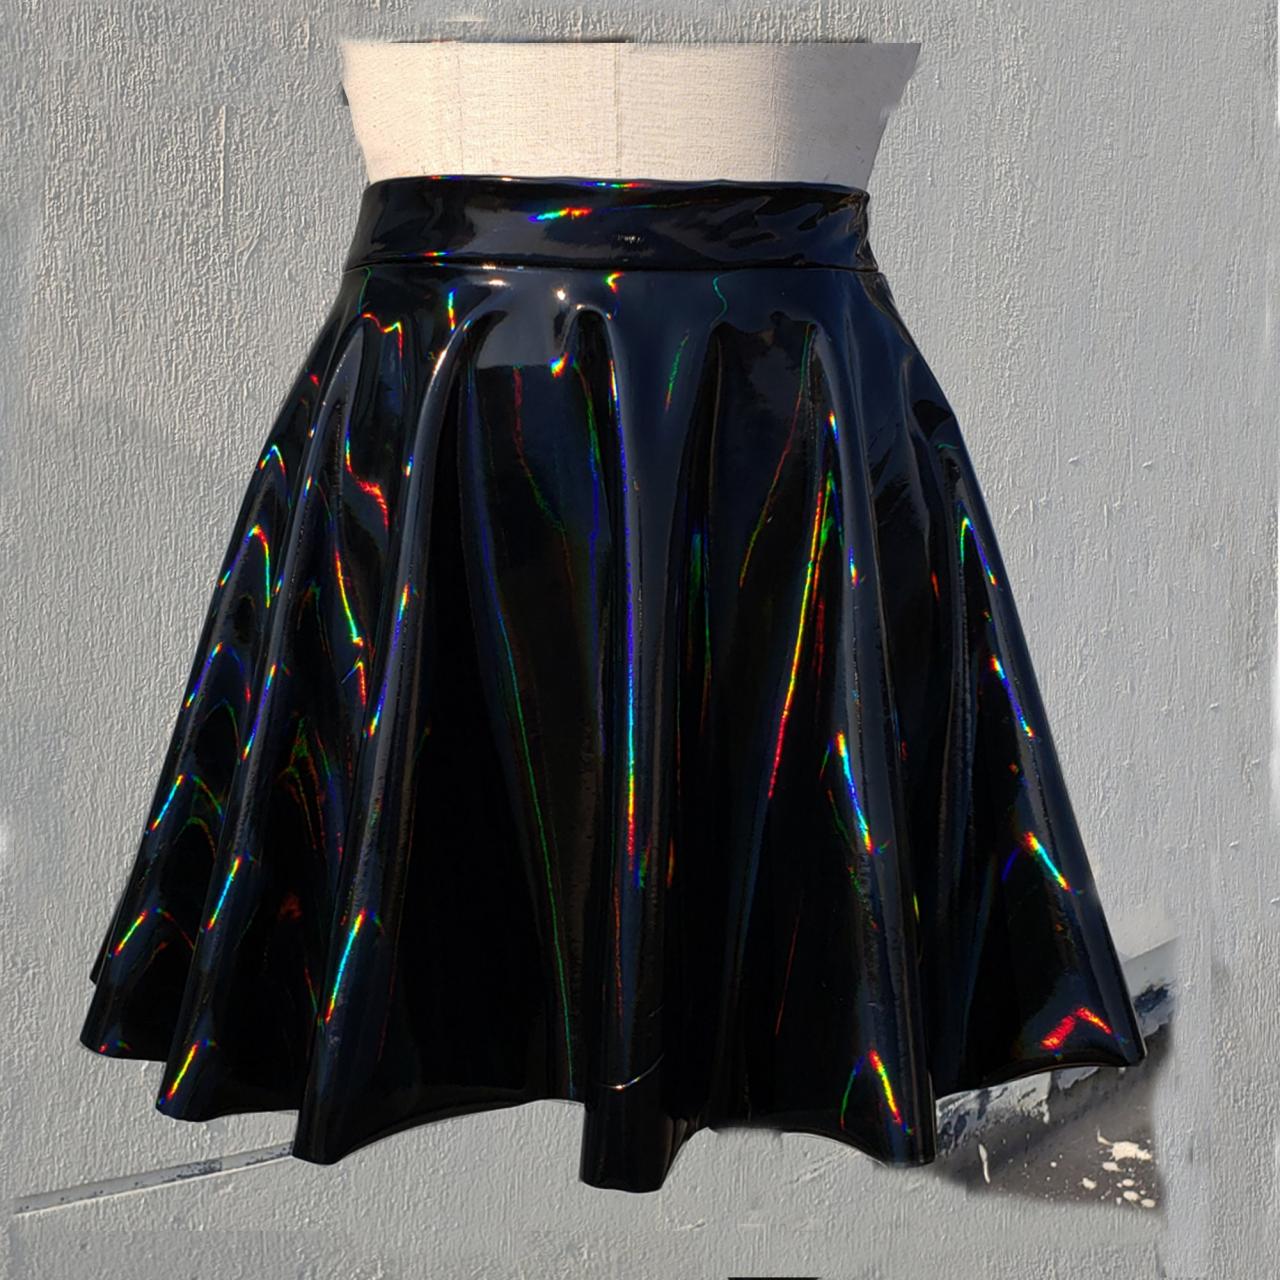 Gothic Skirt, Holographic Black Gloss Stretch Pvc Vinyl Circle Skater Skirt,rave Skirt,goth Skirt